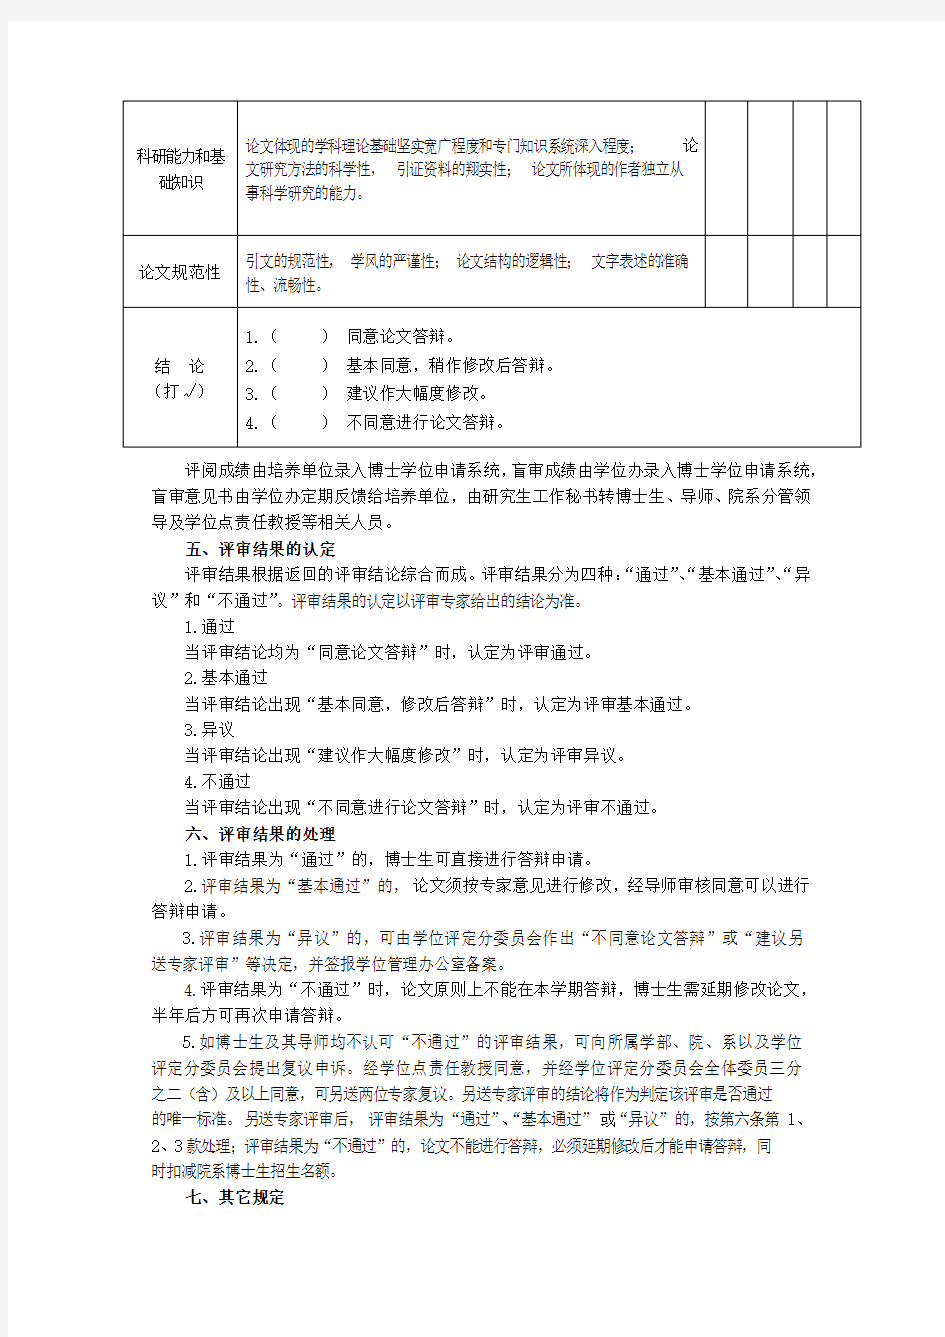 华东师范大学博士学位论文评阅与盲审办法 (含复议审批表)